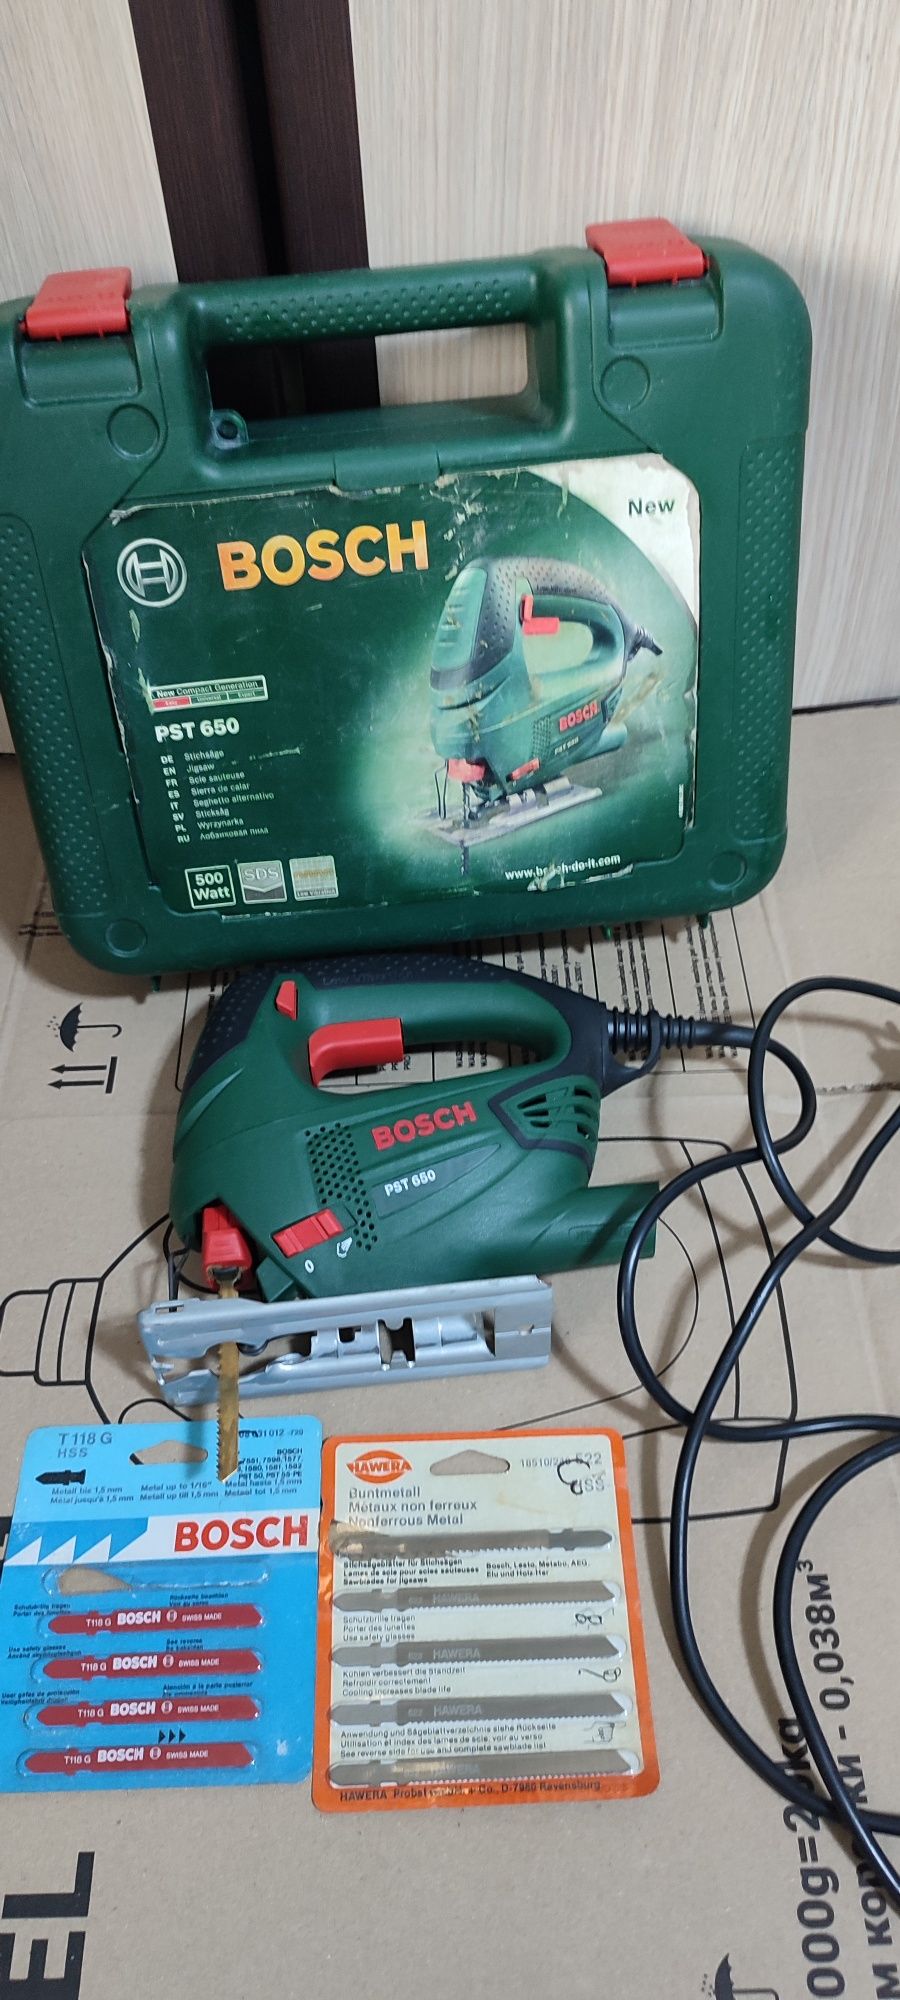 Vând șoricel Bosch PST800 PEL+PST 650